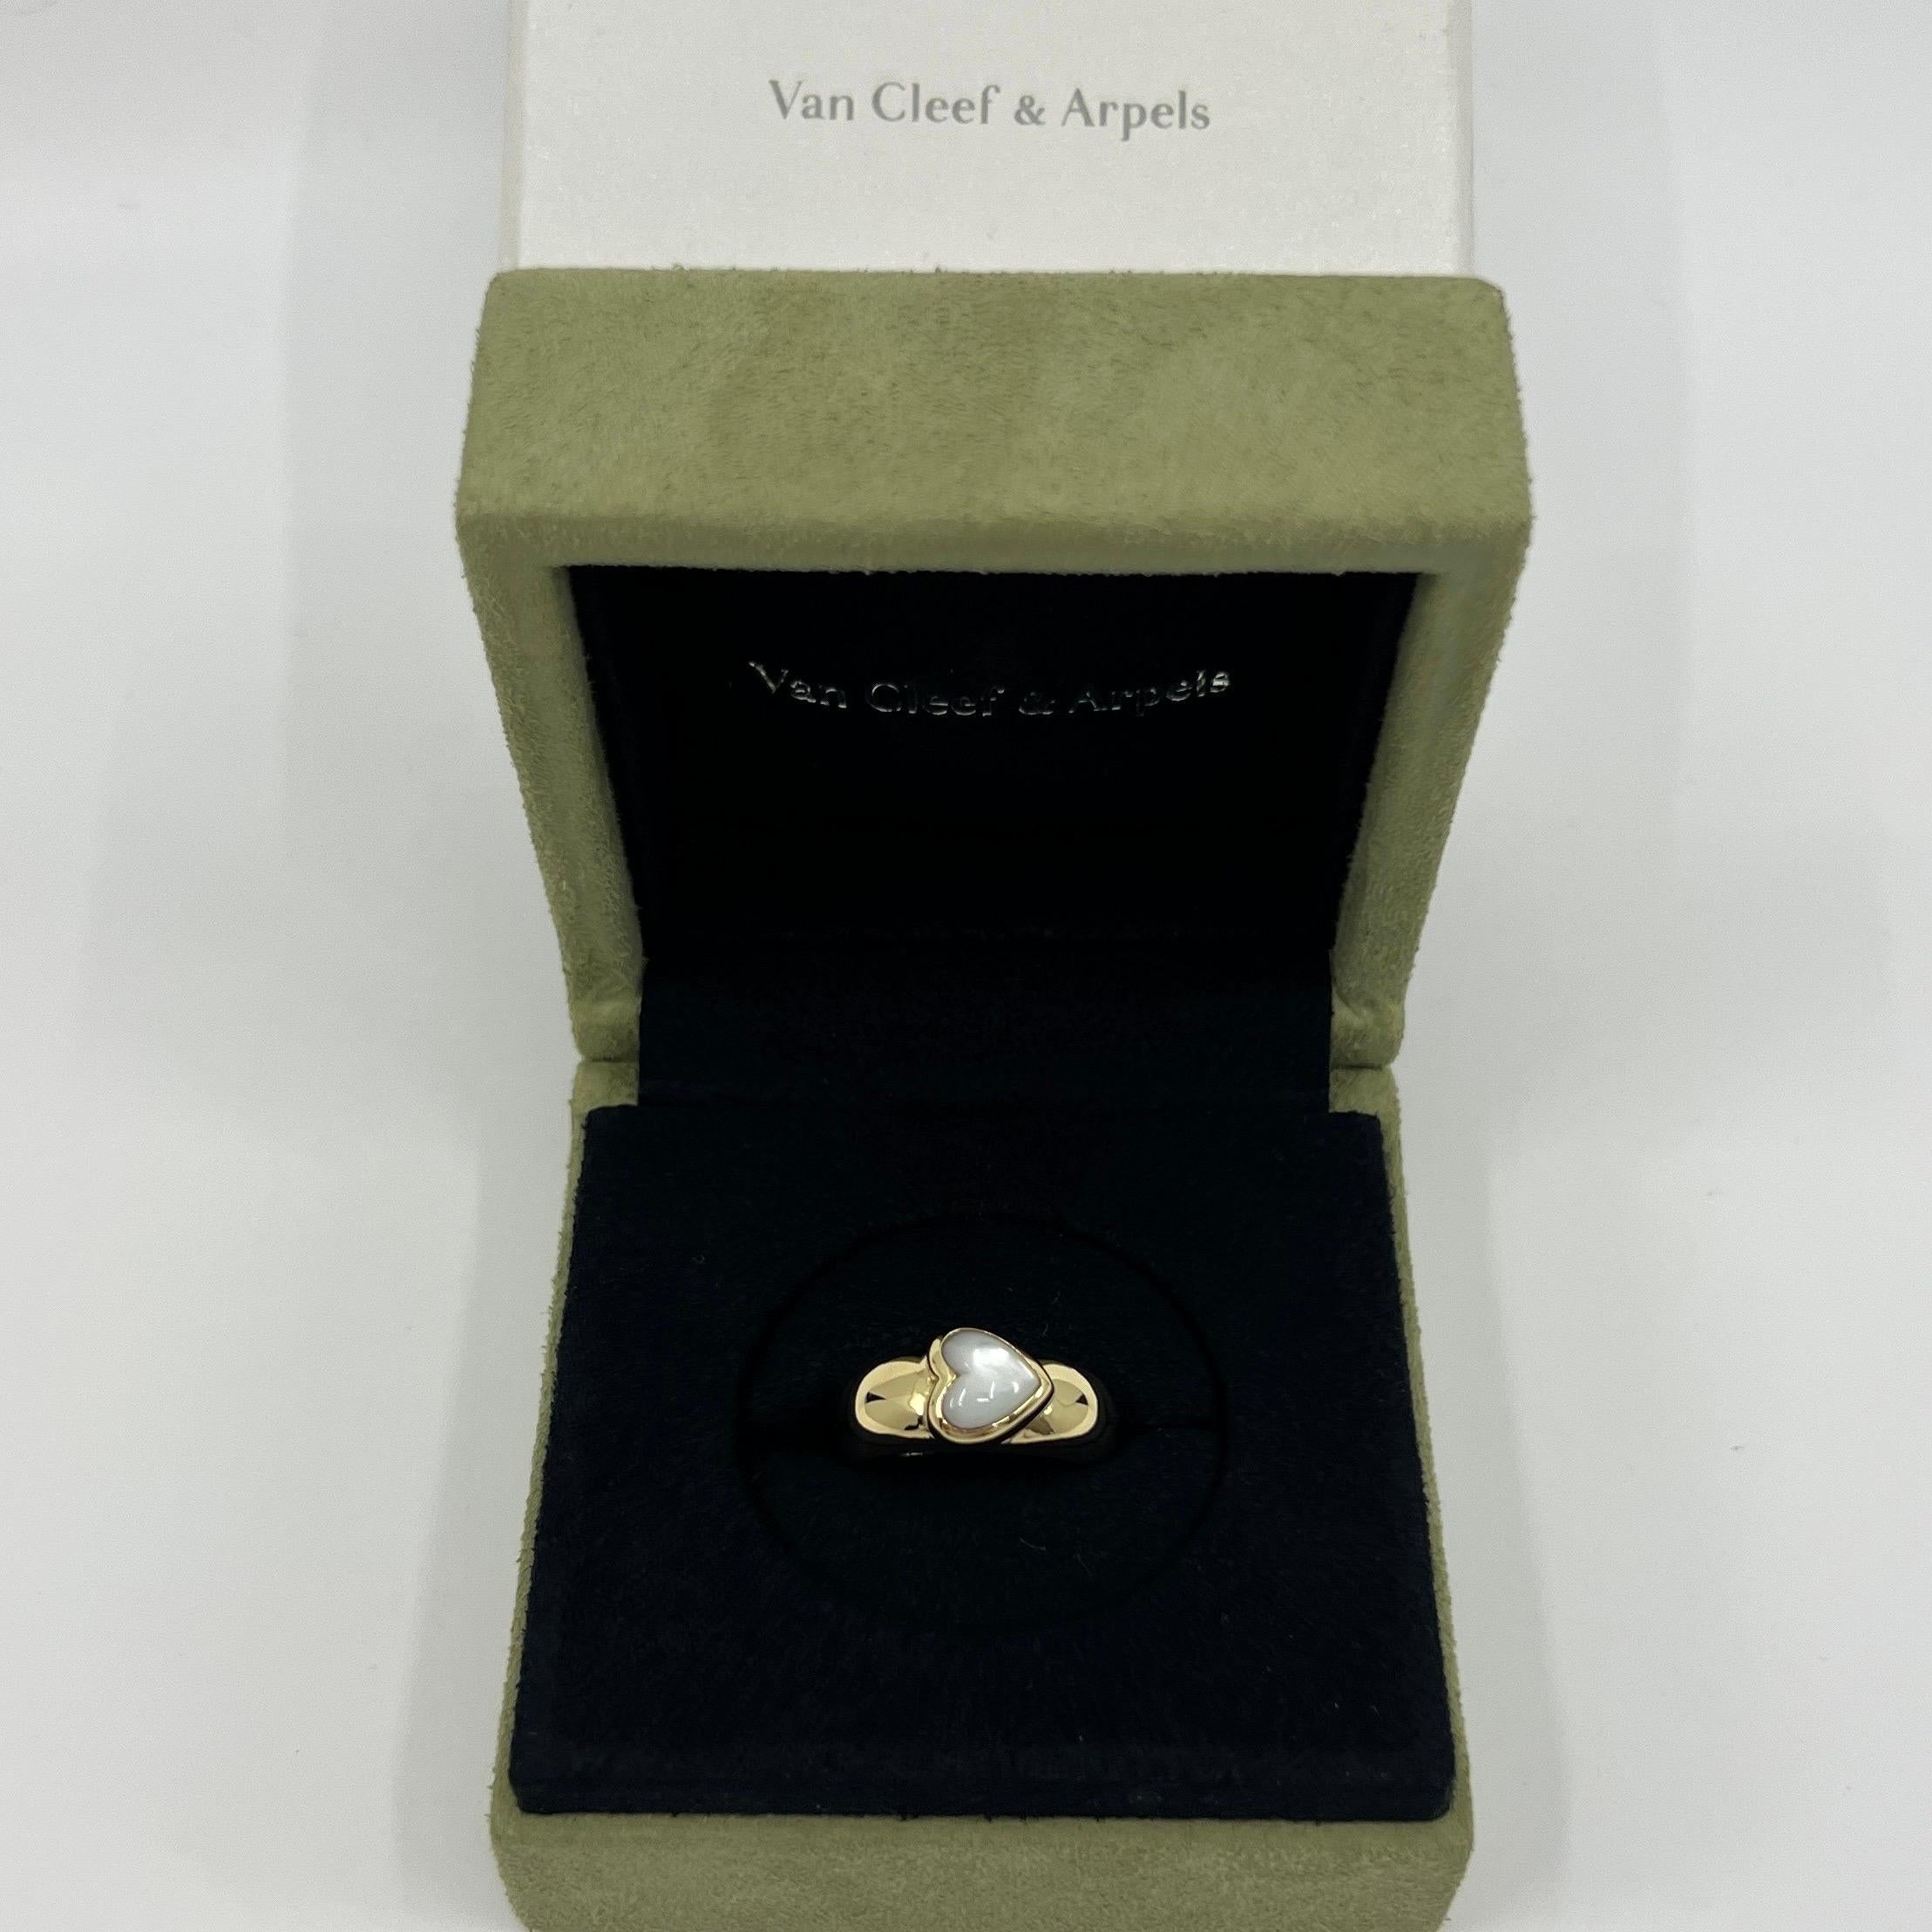 Seltene Vintage Van Cleef & Arpels Heart Cut Mutter der Perle 18k Gelbgold Dome Ring.

Ein atemberaubender Vintage-Ring von Van Cleef & Arpels mit einem wunderschönen, hochwertigen Perlmutt mit schönem Glanz und einem ausgezeichneten